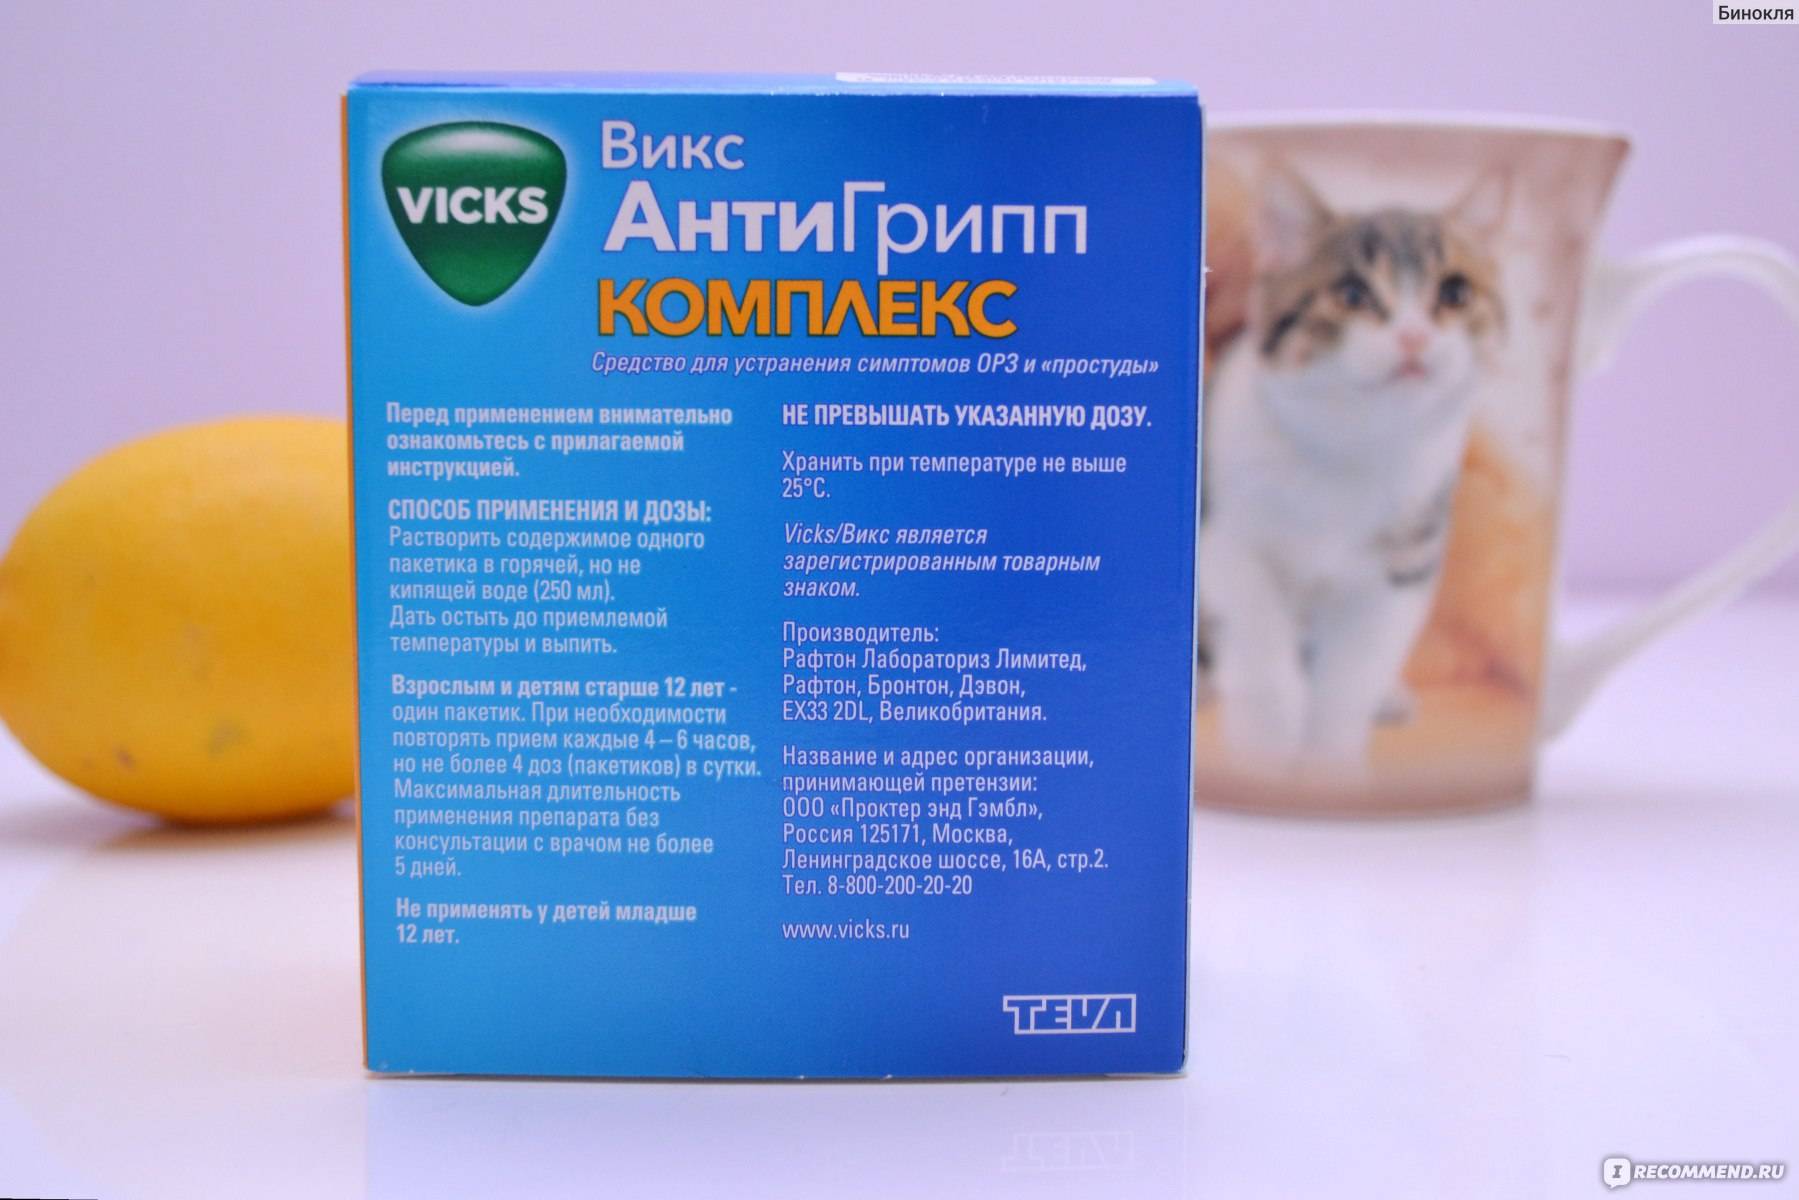 Антибиотики для кошек широкого спектра действия – типы препаратов и дозировка